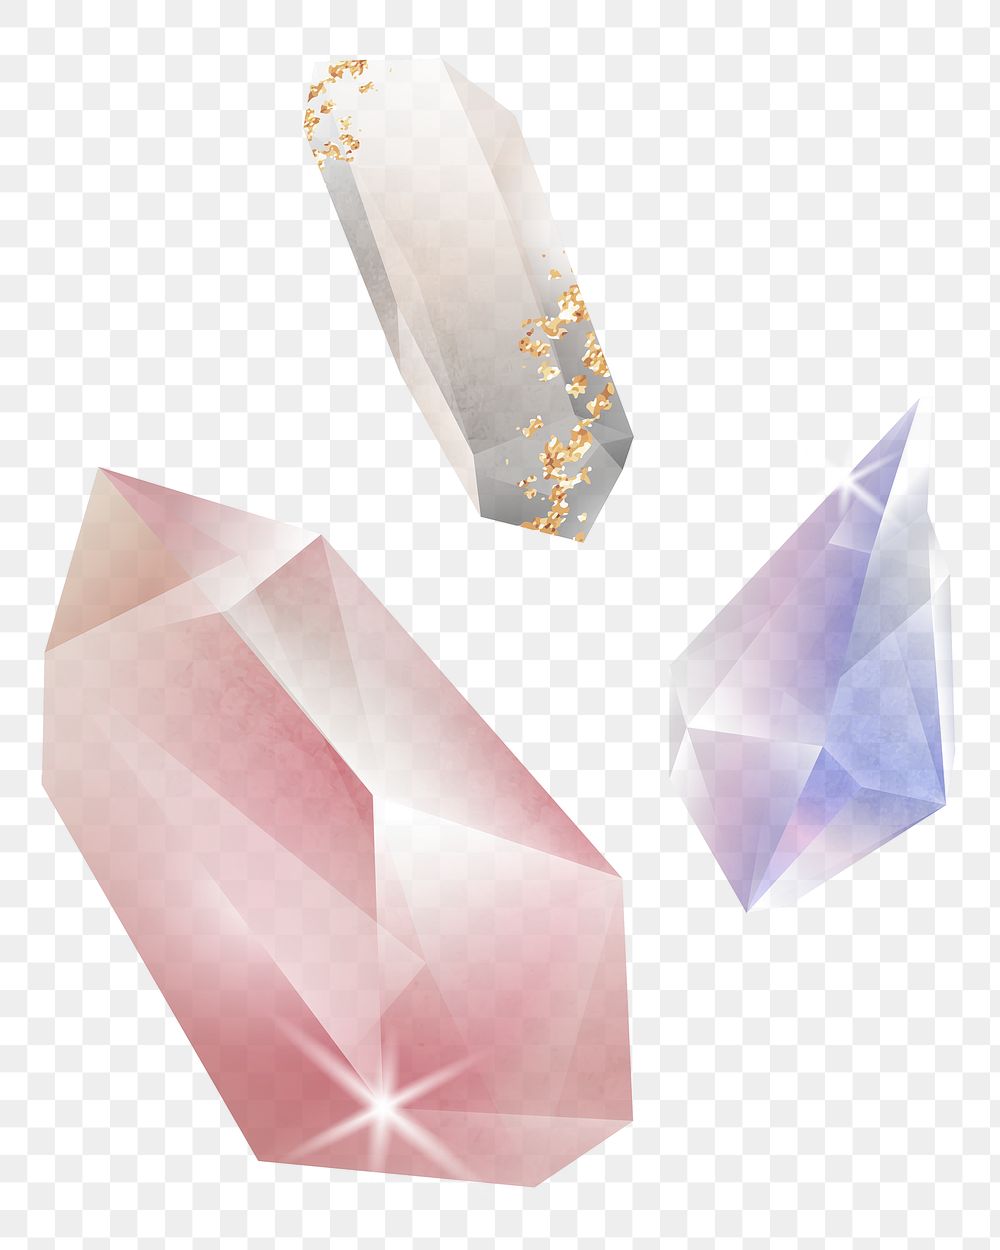 Png colorful crystals design element, transparent background